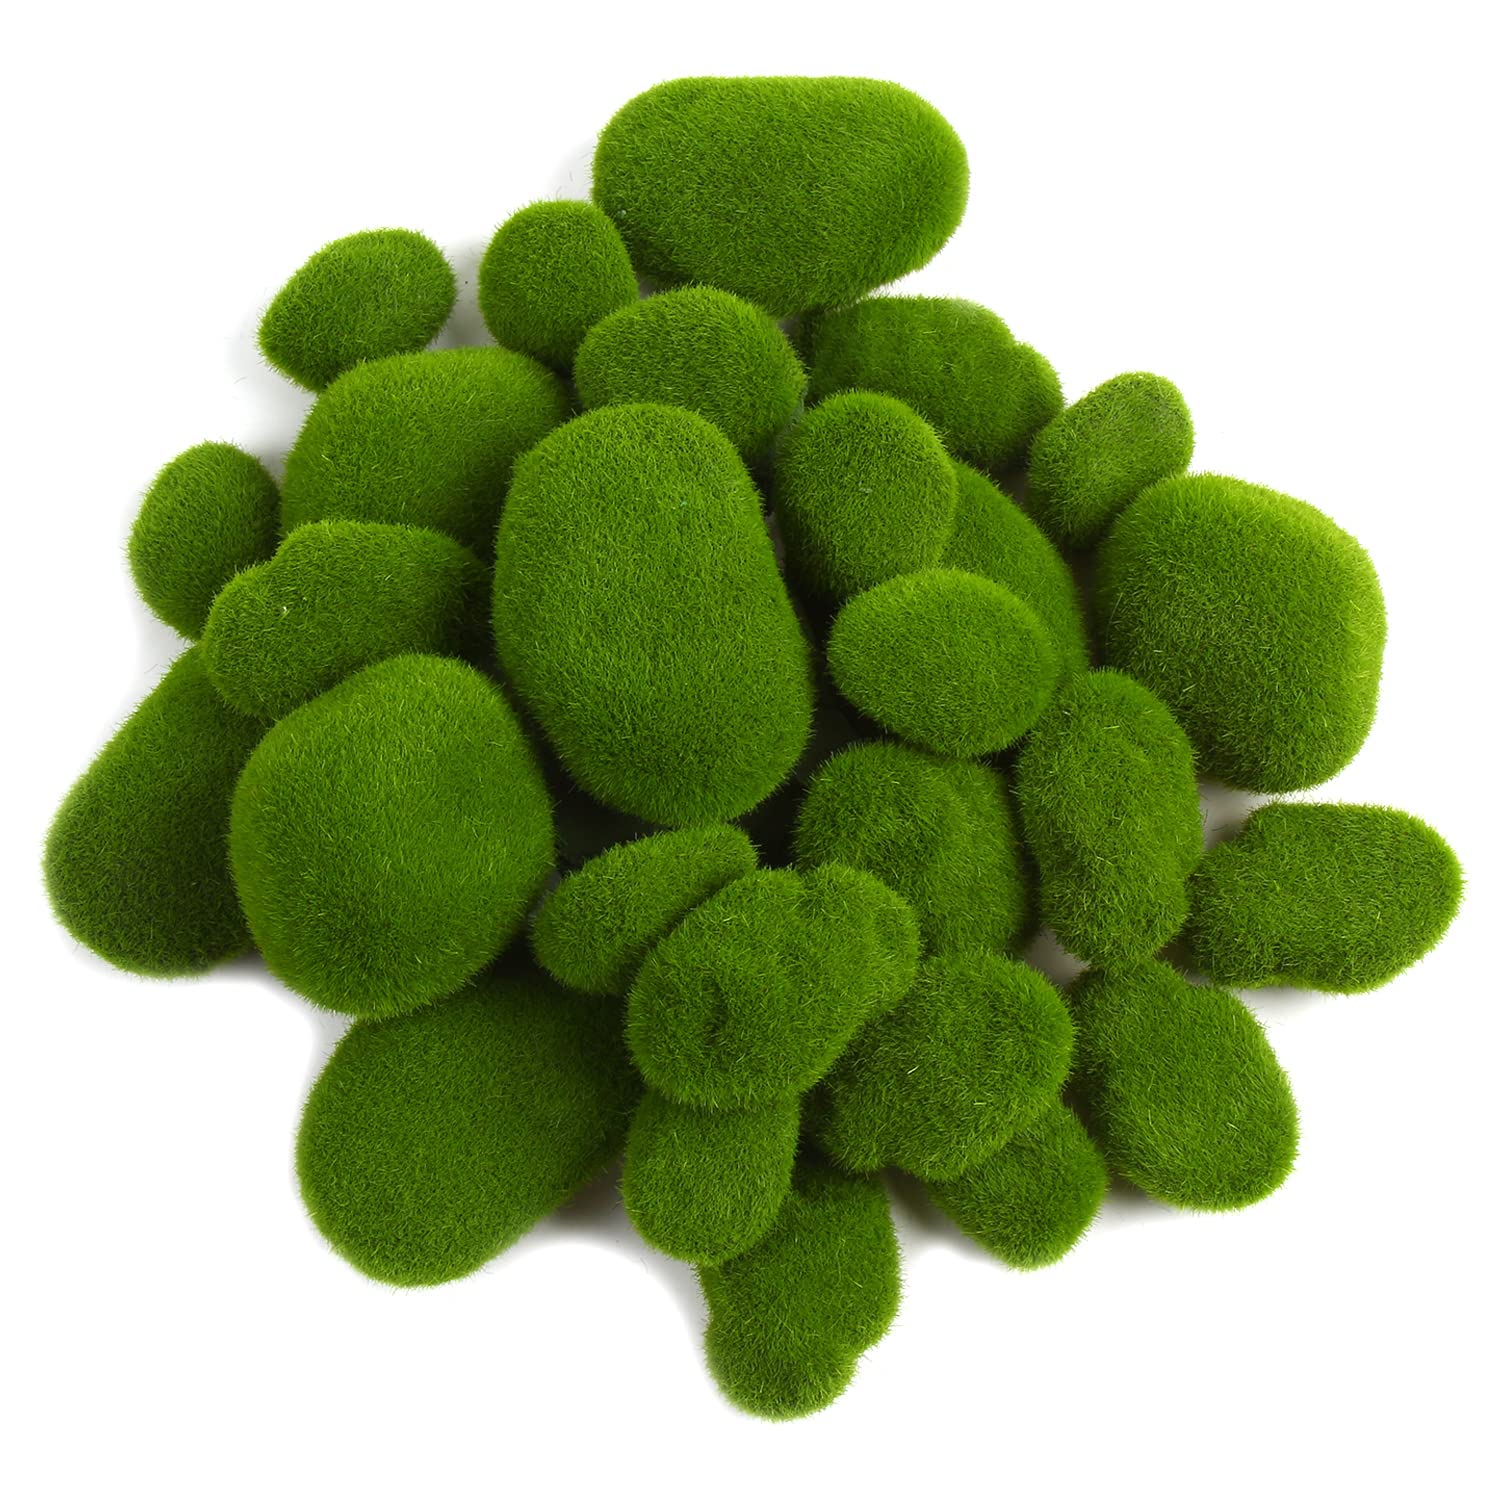 CCINEE 34pcs Artificial Moss Rocks, 5 Size Green Floral Moss Balls